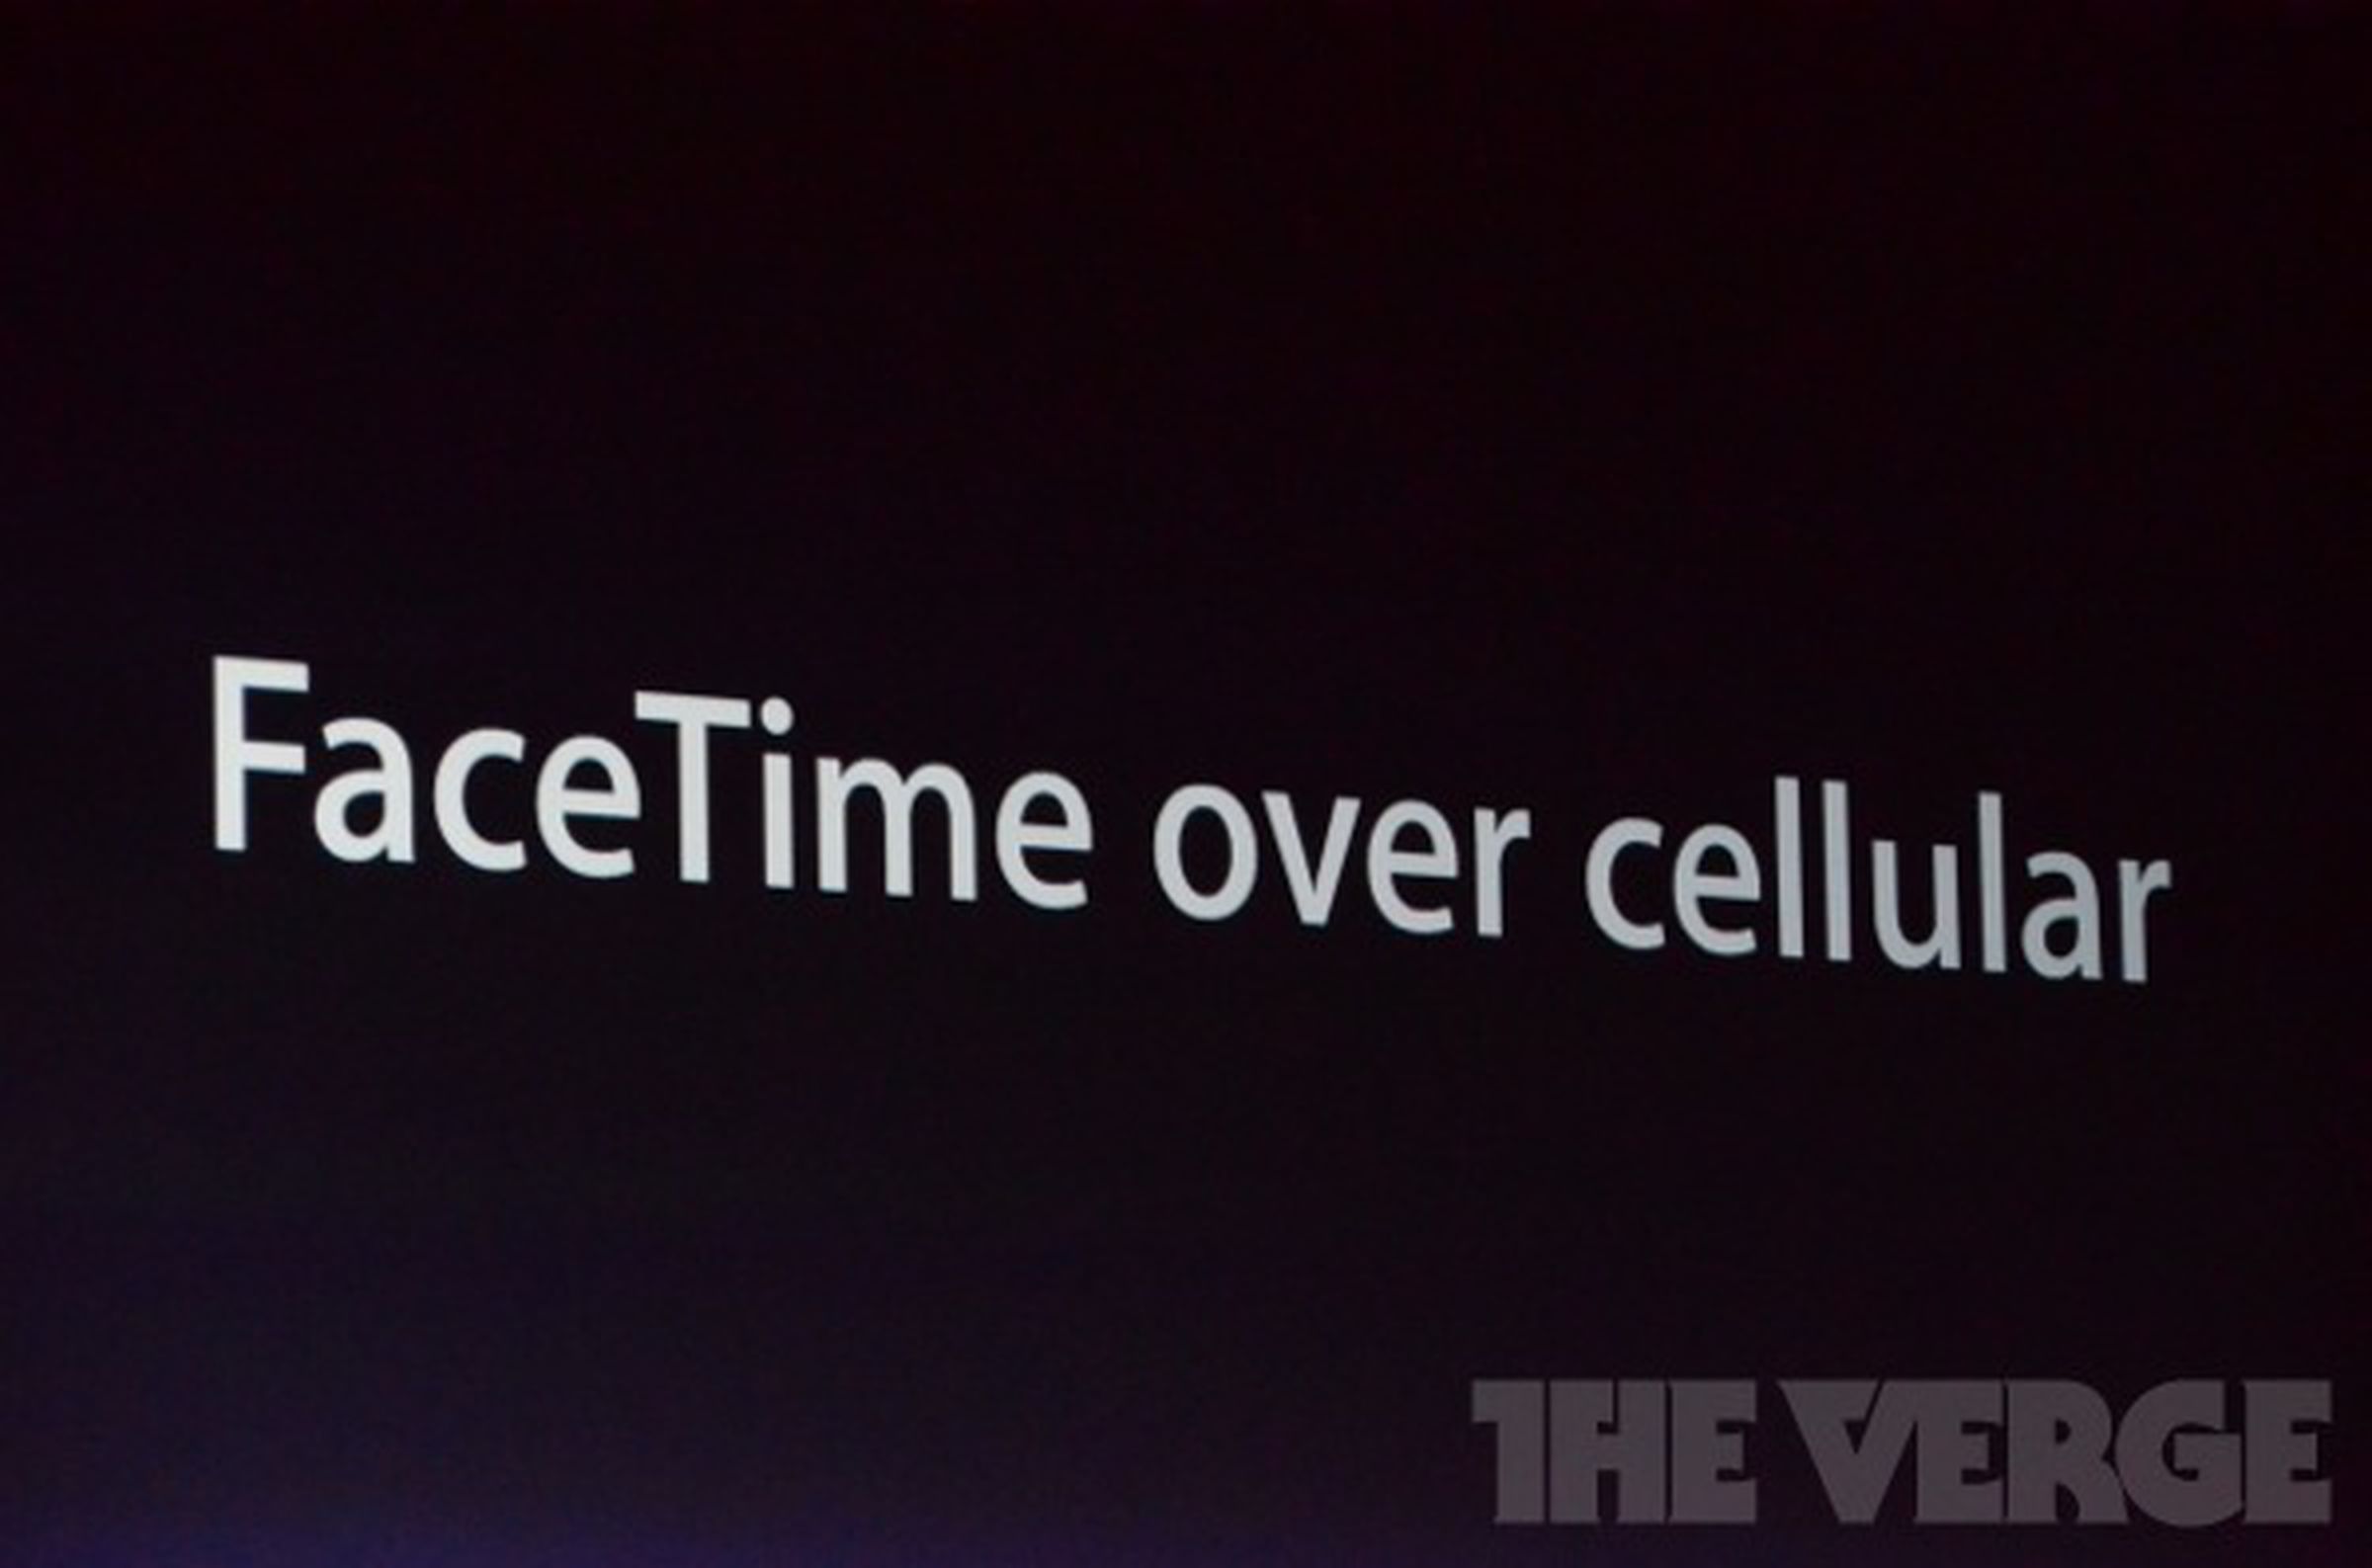 Facetime for cellular on iOS 6 liveblog images